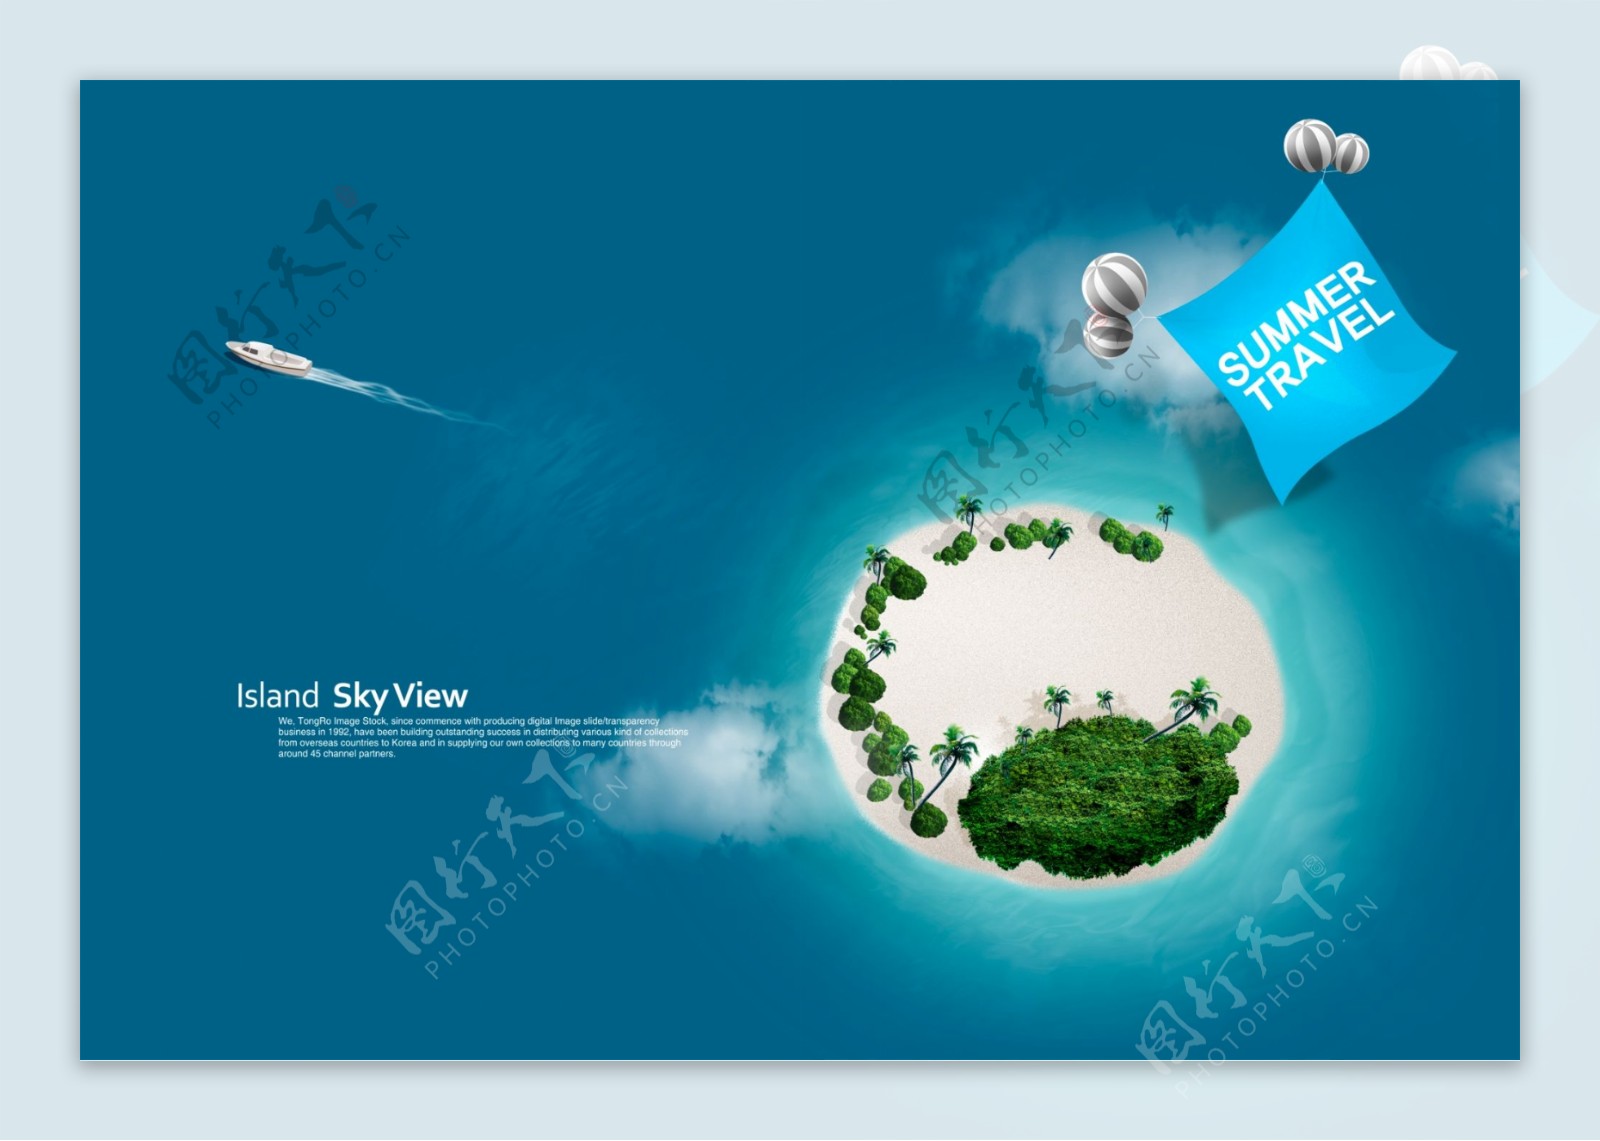 夏日海岛旅游海报